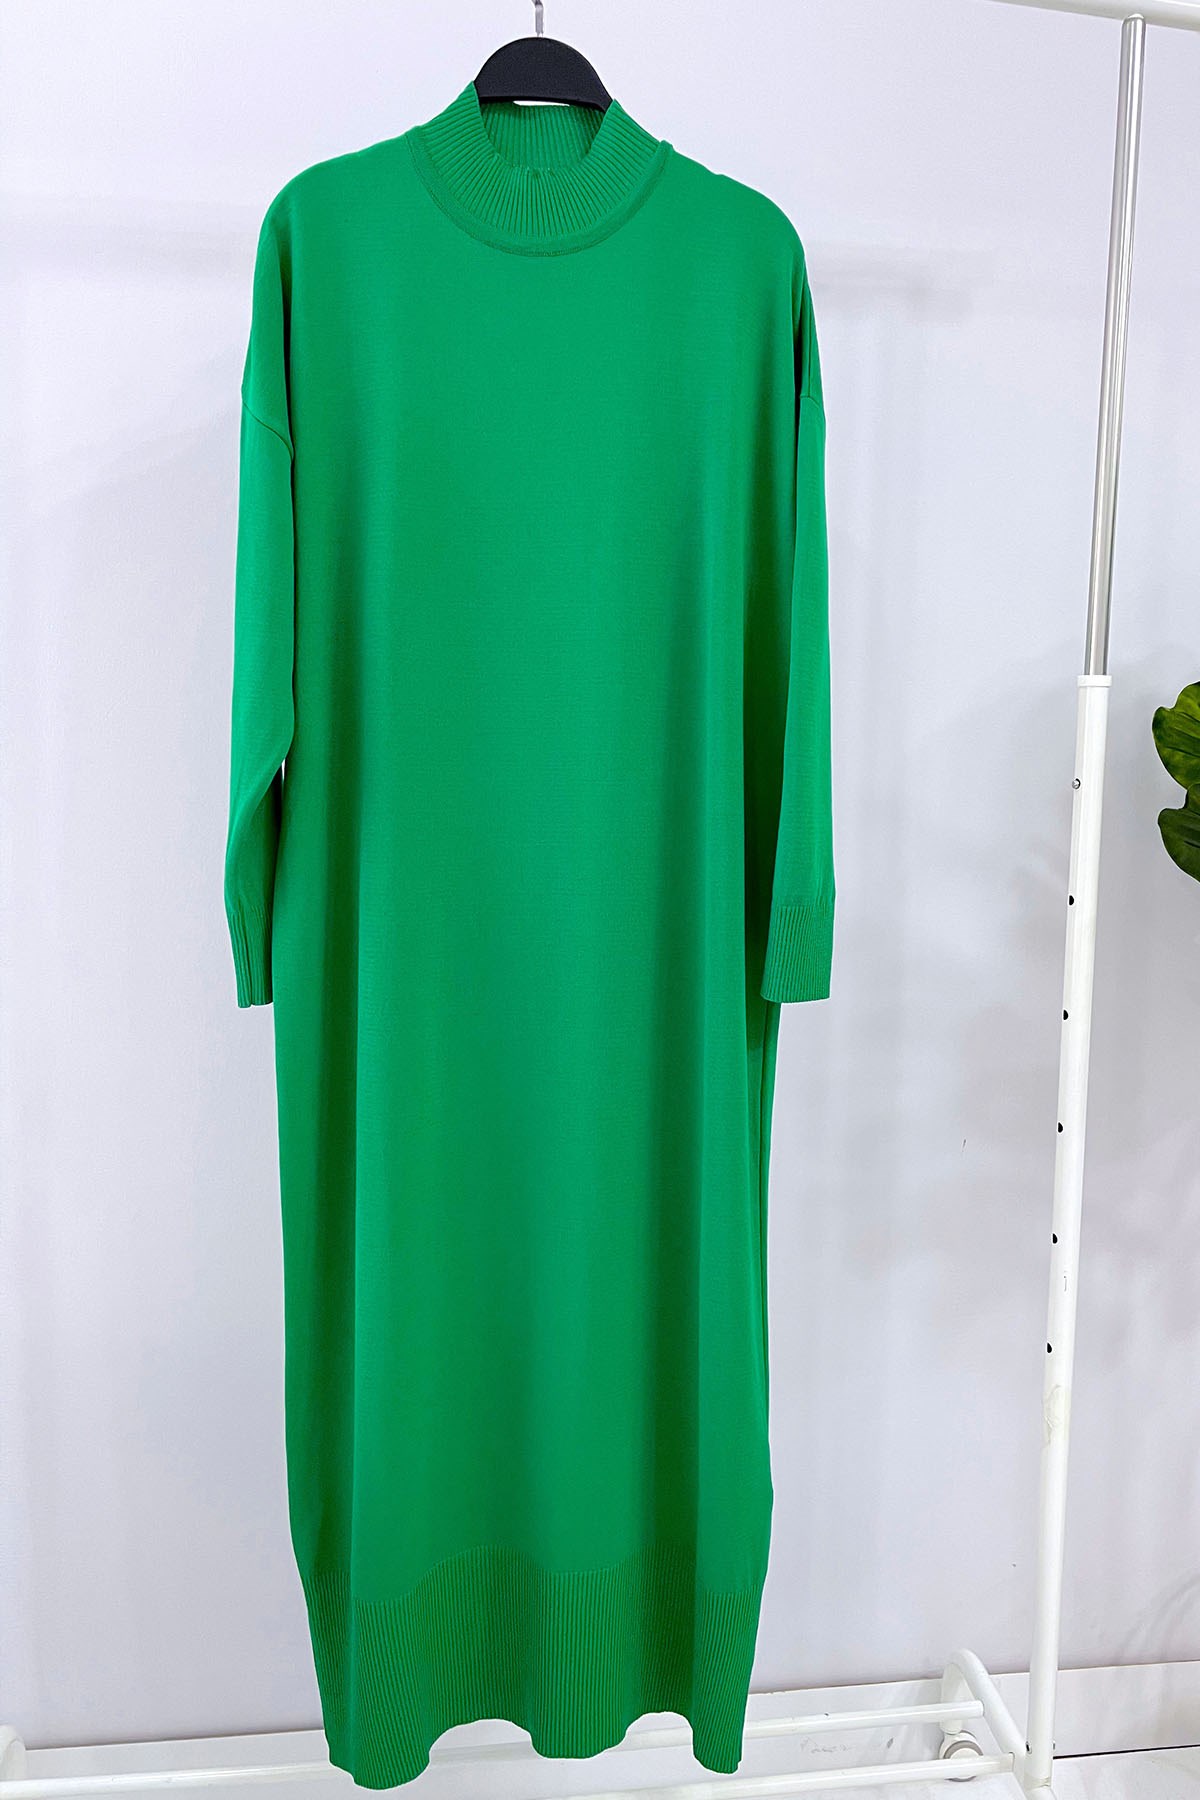 Merserize Triko Elbise - Yeşil